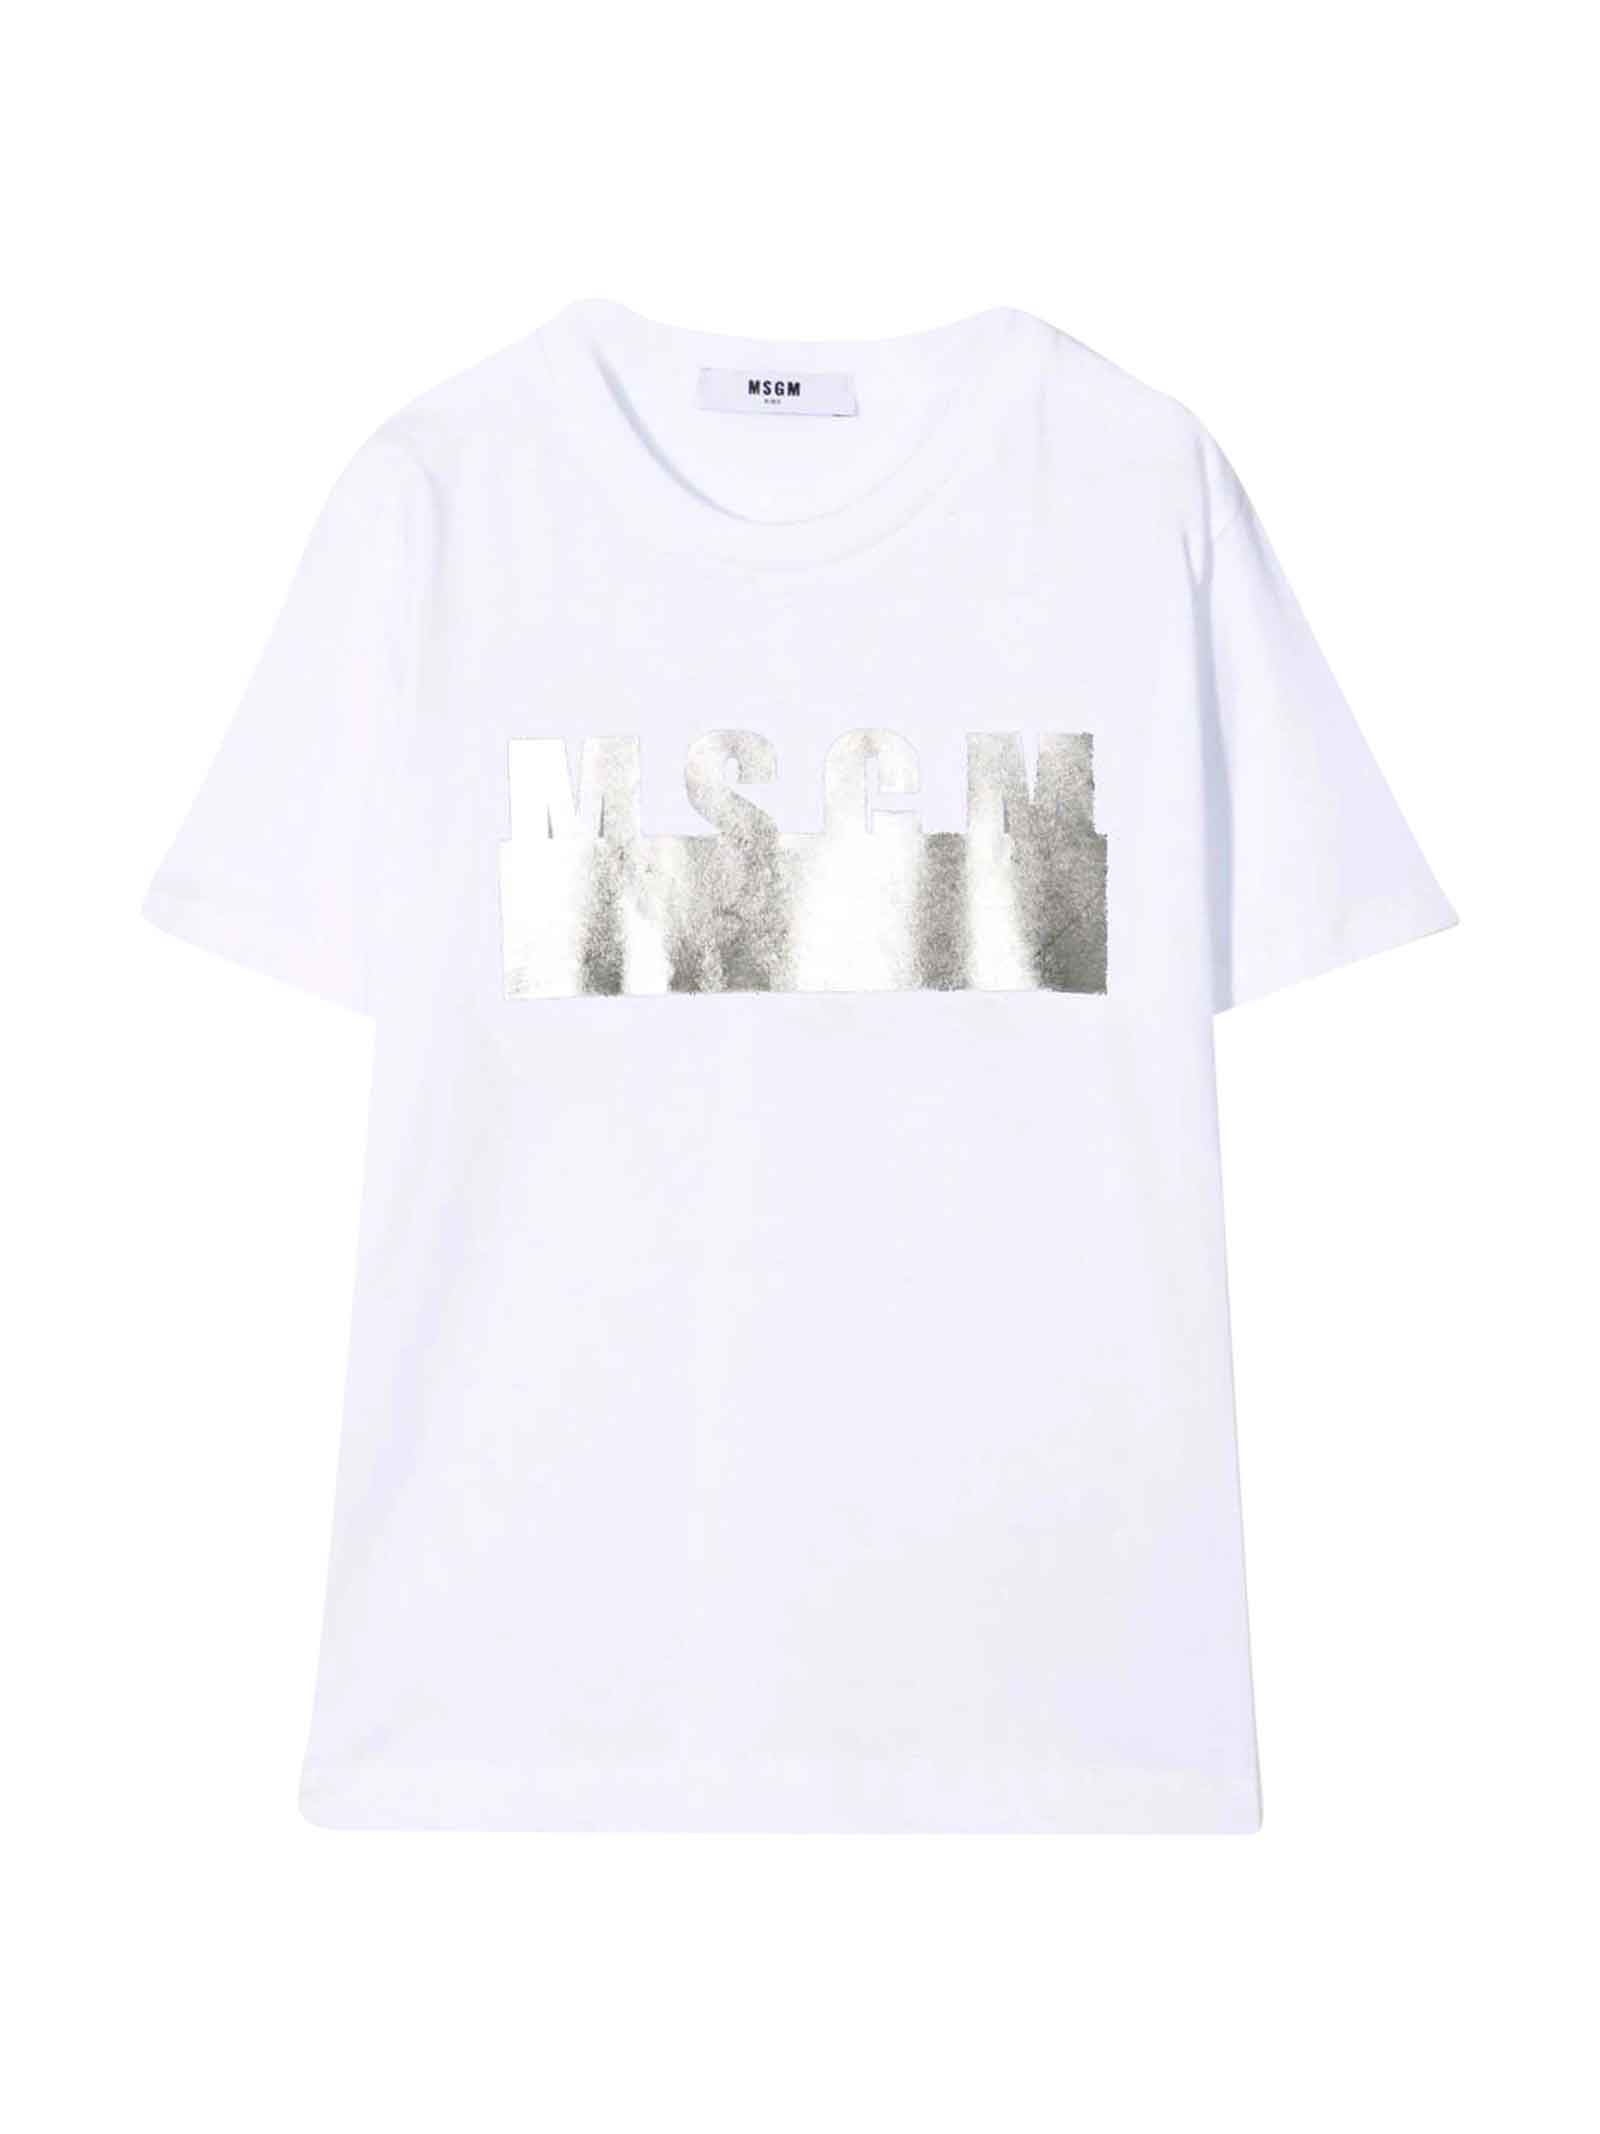 MSGM Moschino Kids Unisex White T-shirt